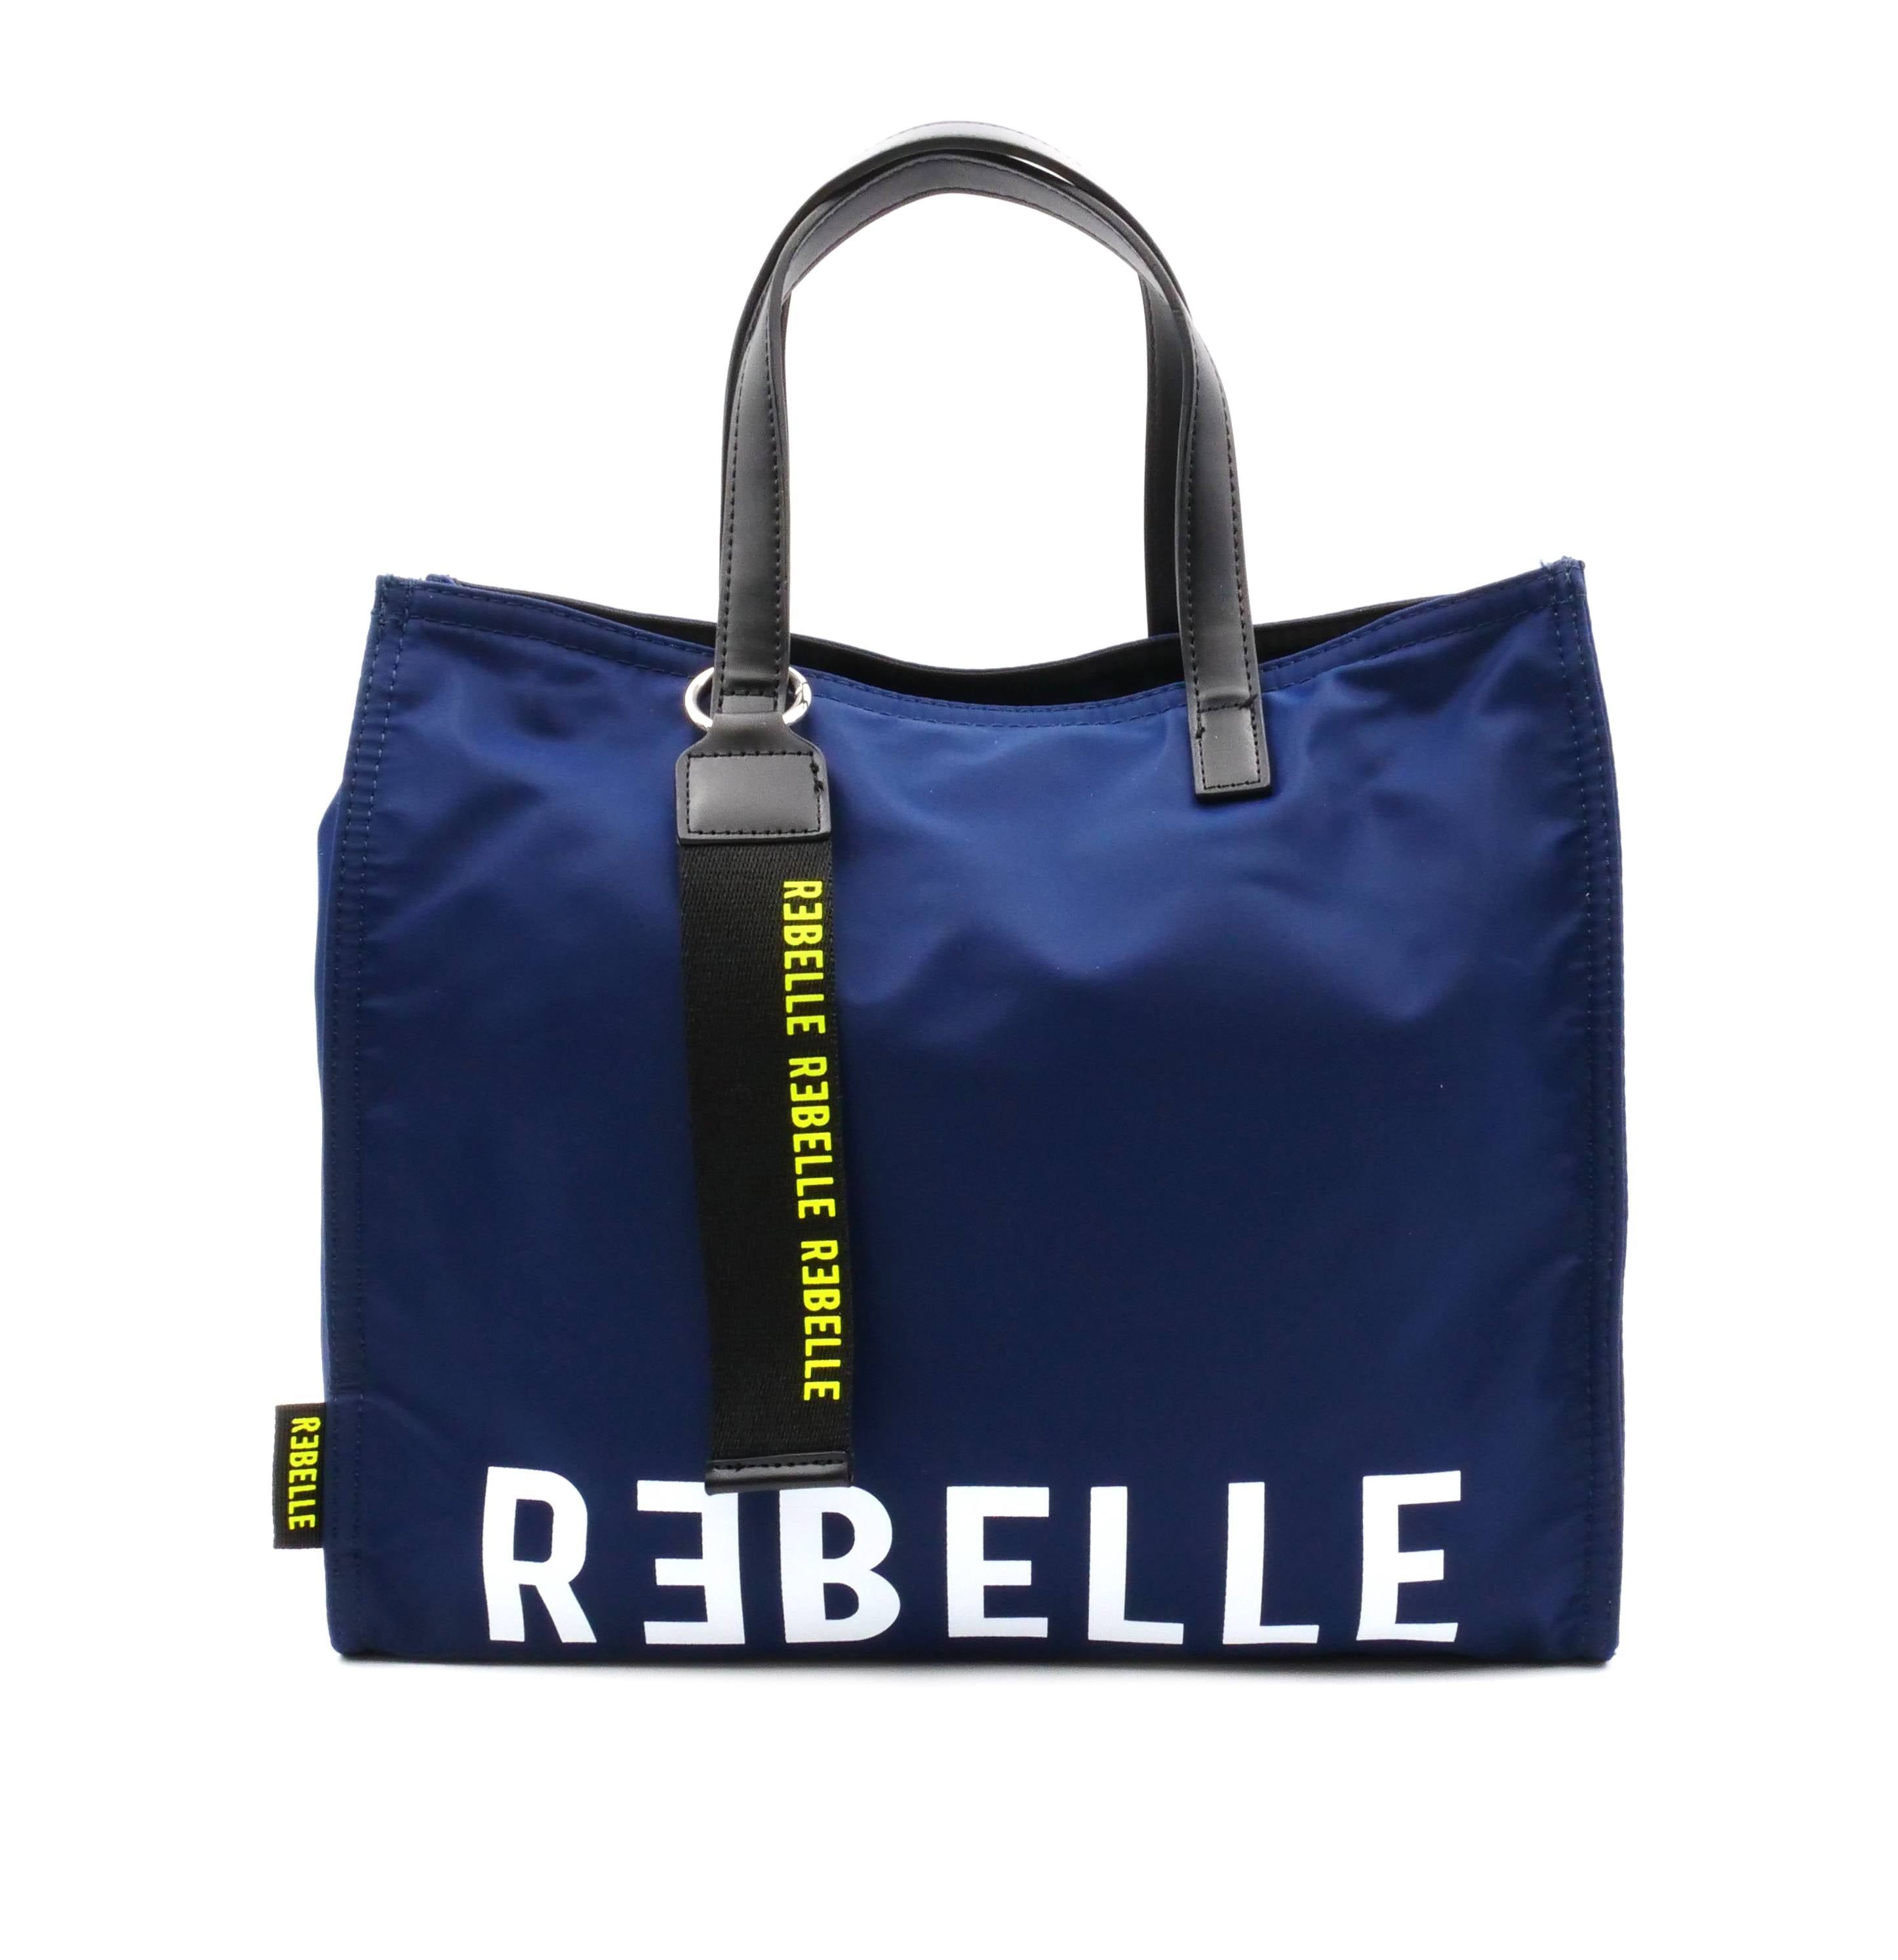 Shopping Bag ELECTRA REBELLE - BLUEBELL - Sergio Fabbri